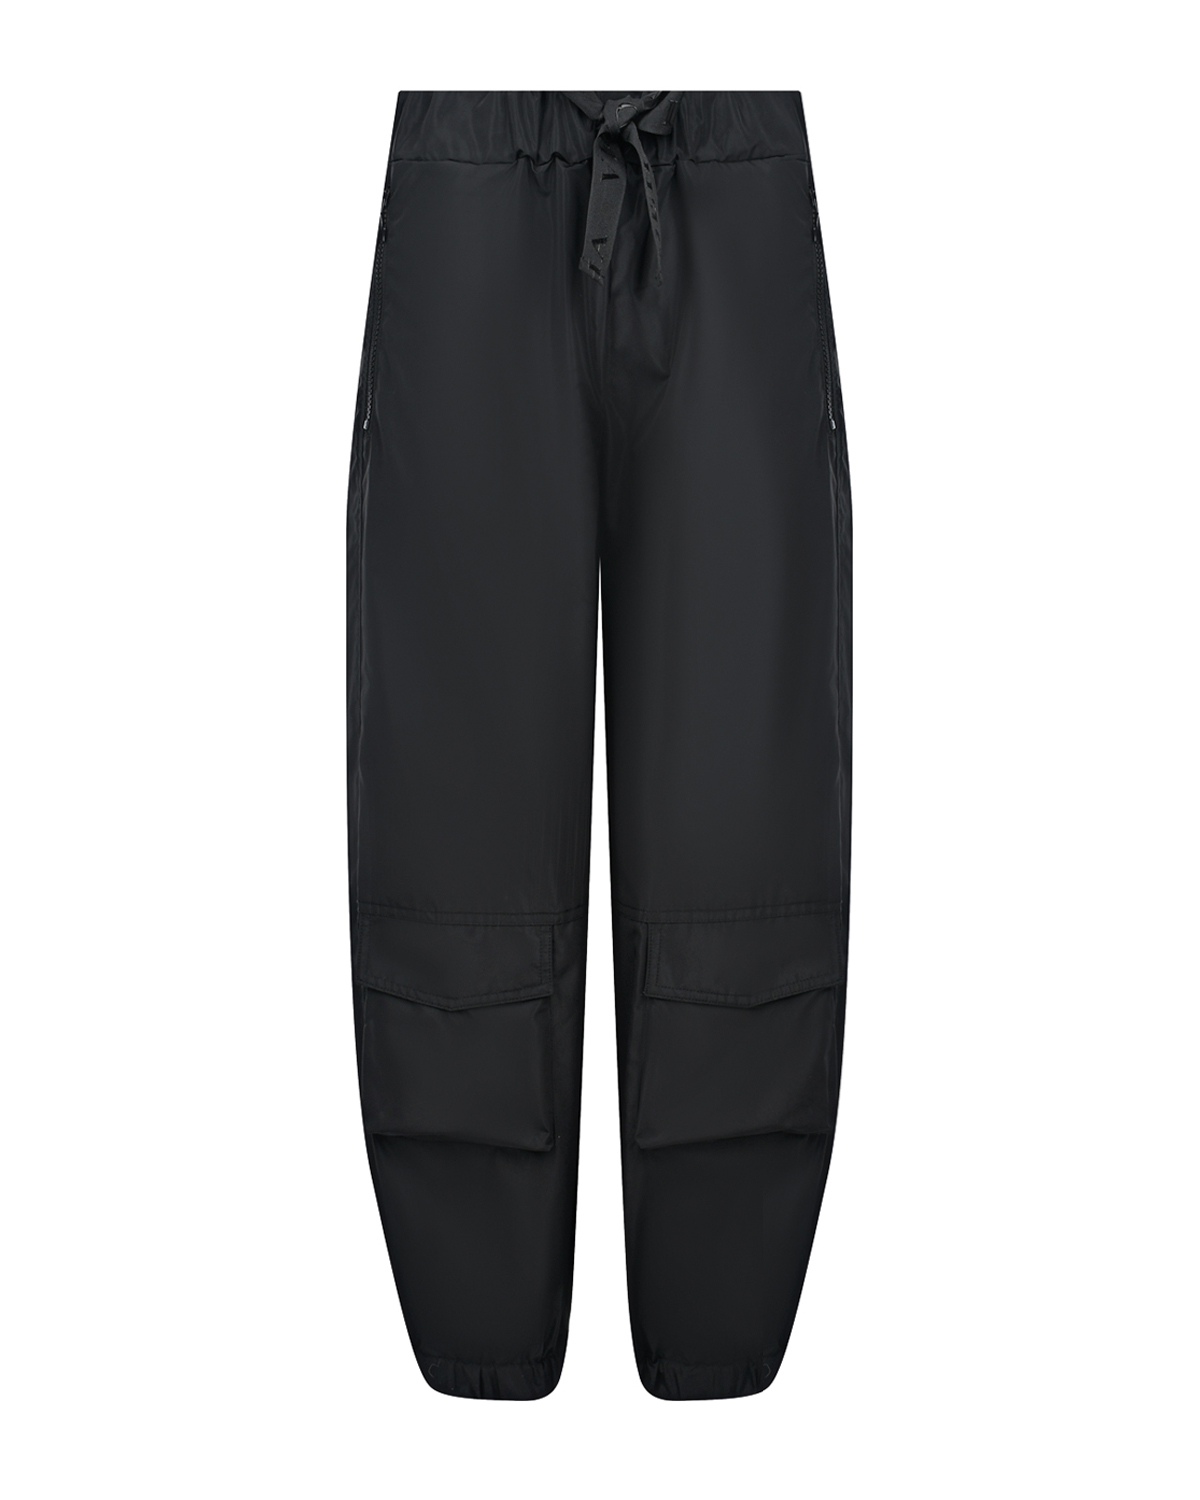 Черные джоггеры с накладными карманами Deha, размер 38, цвет черный - фото 1